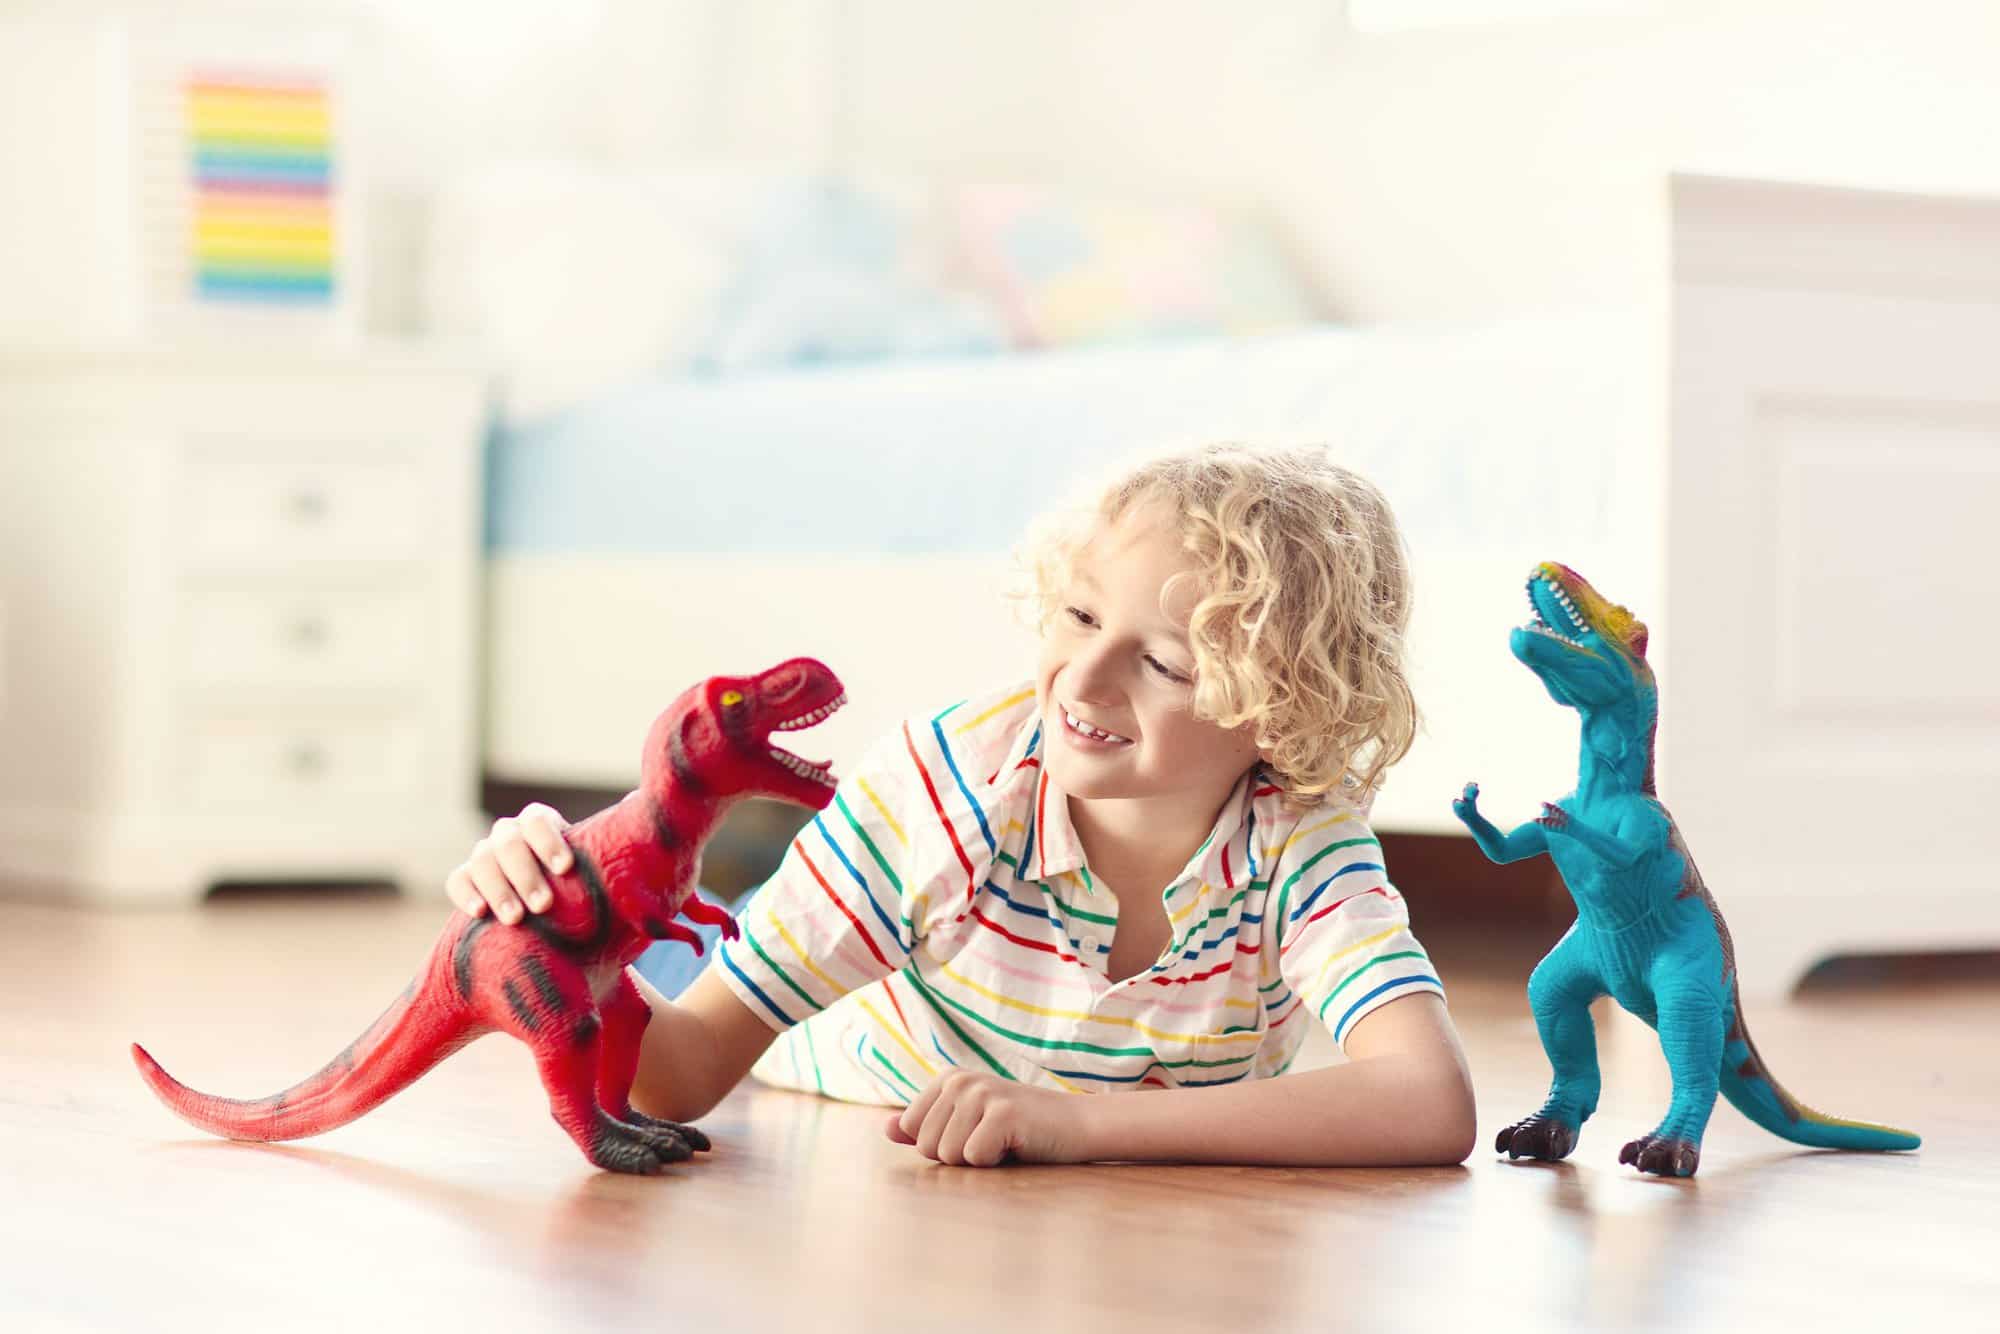 Beneficios de jugar con dinosaurios - Criar con Sentido Común